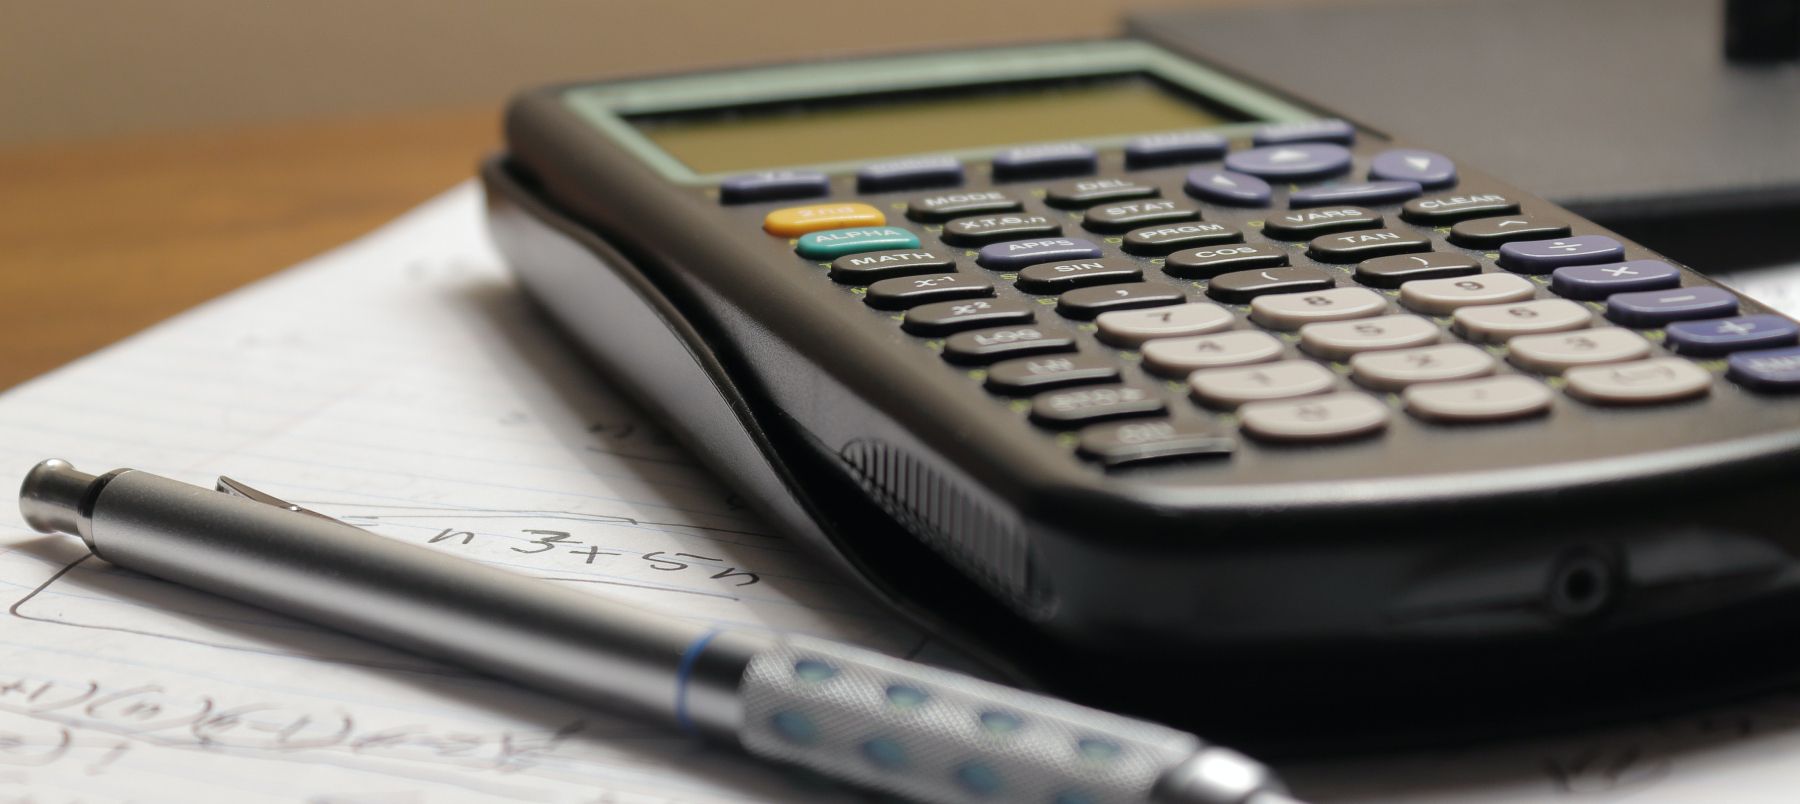 Uma calculadora e uma caneta colocadas em um bloco de notas com equações matemáticas escritas nele